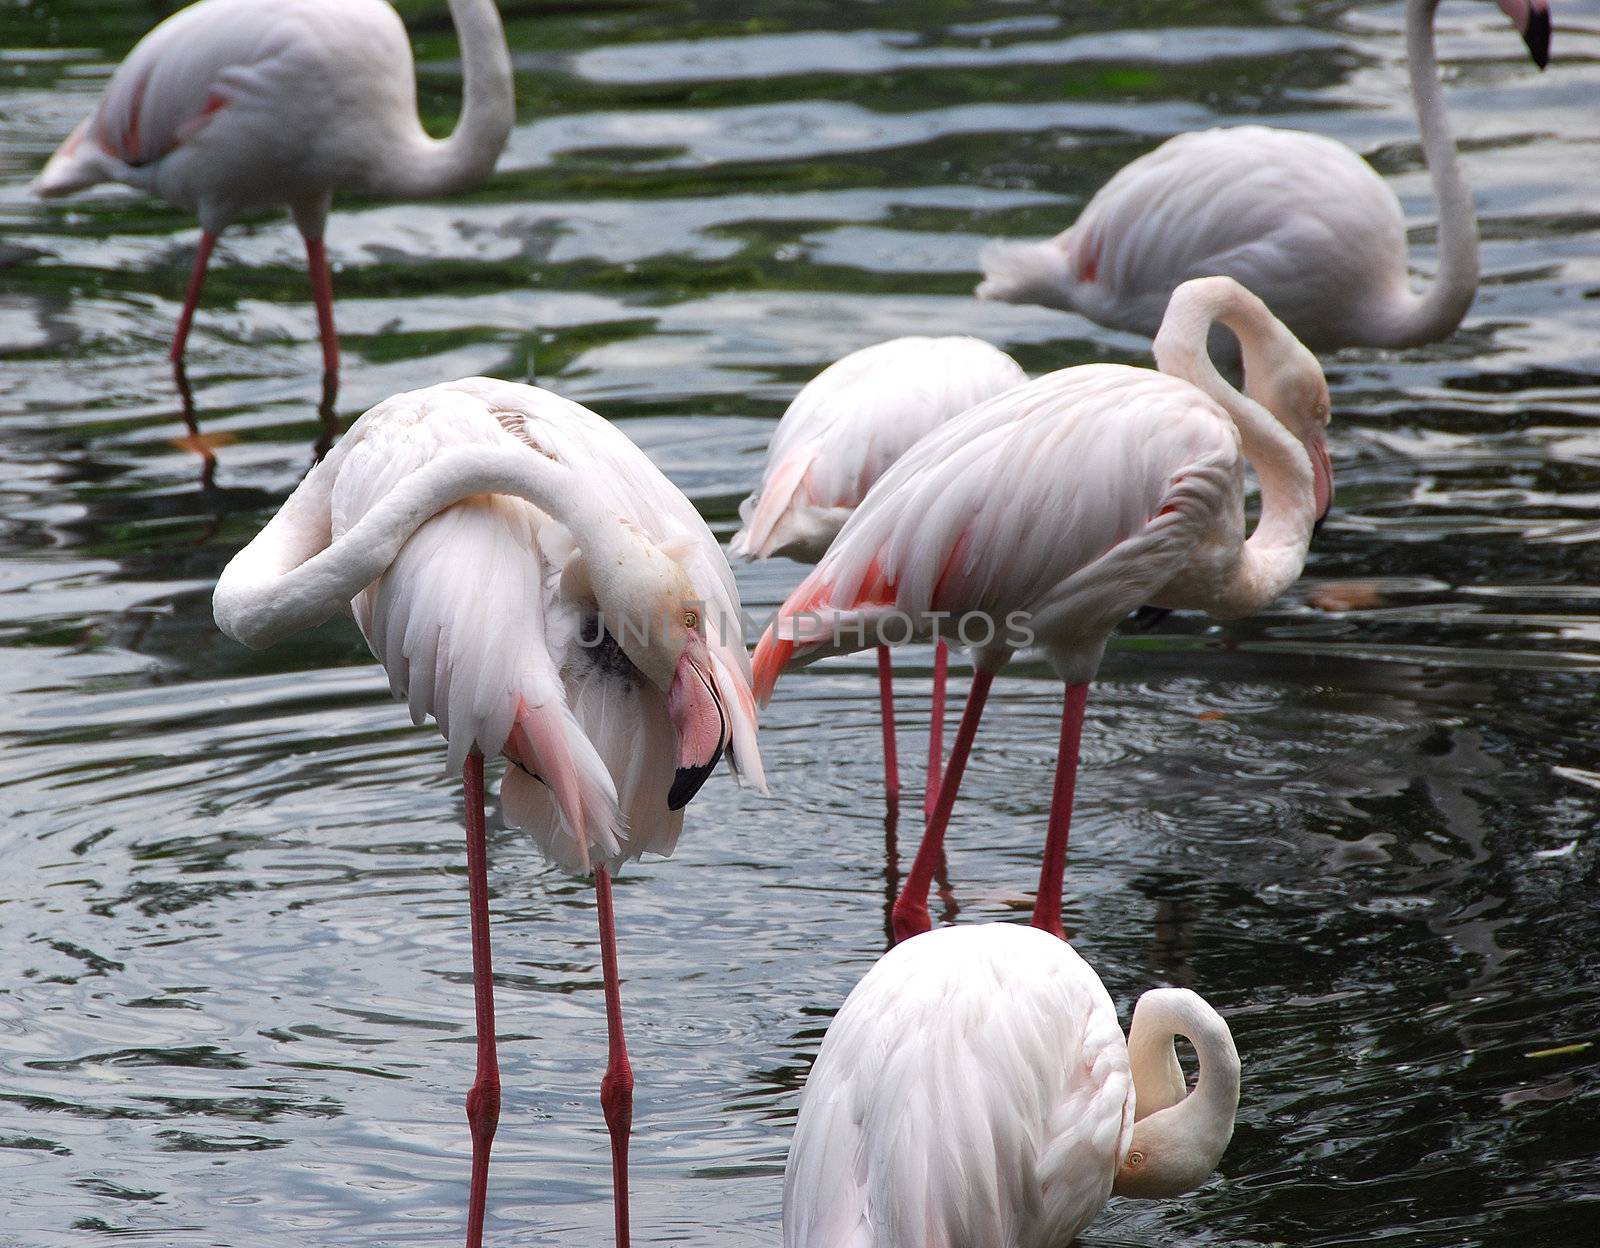 Flamingo A by photocdn39